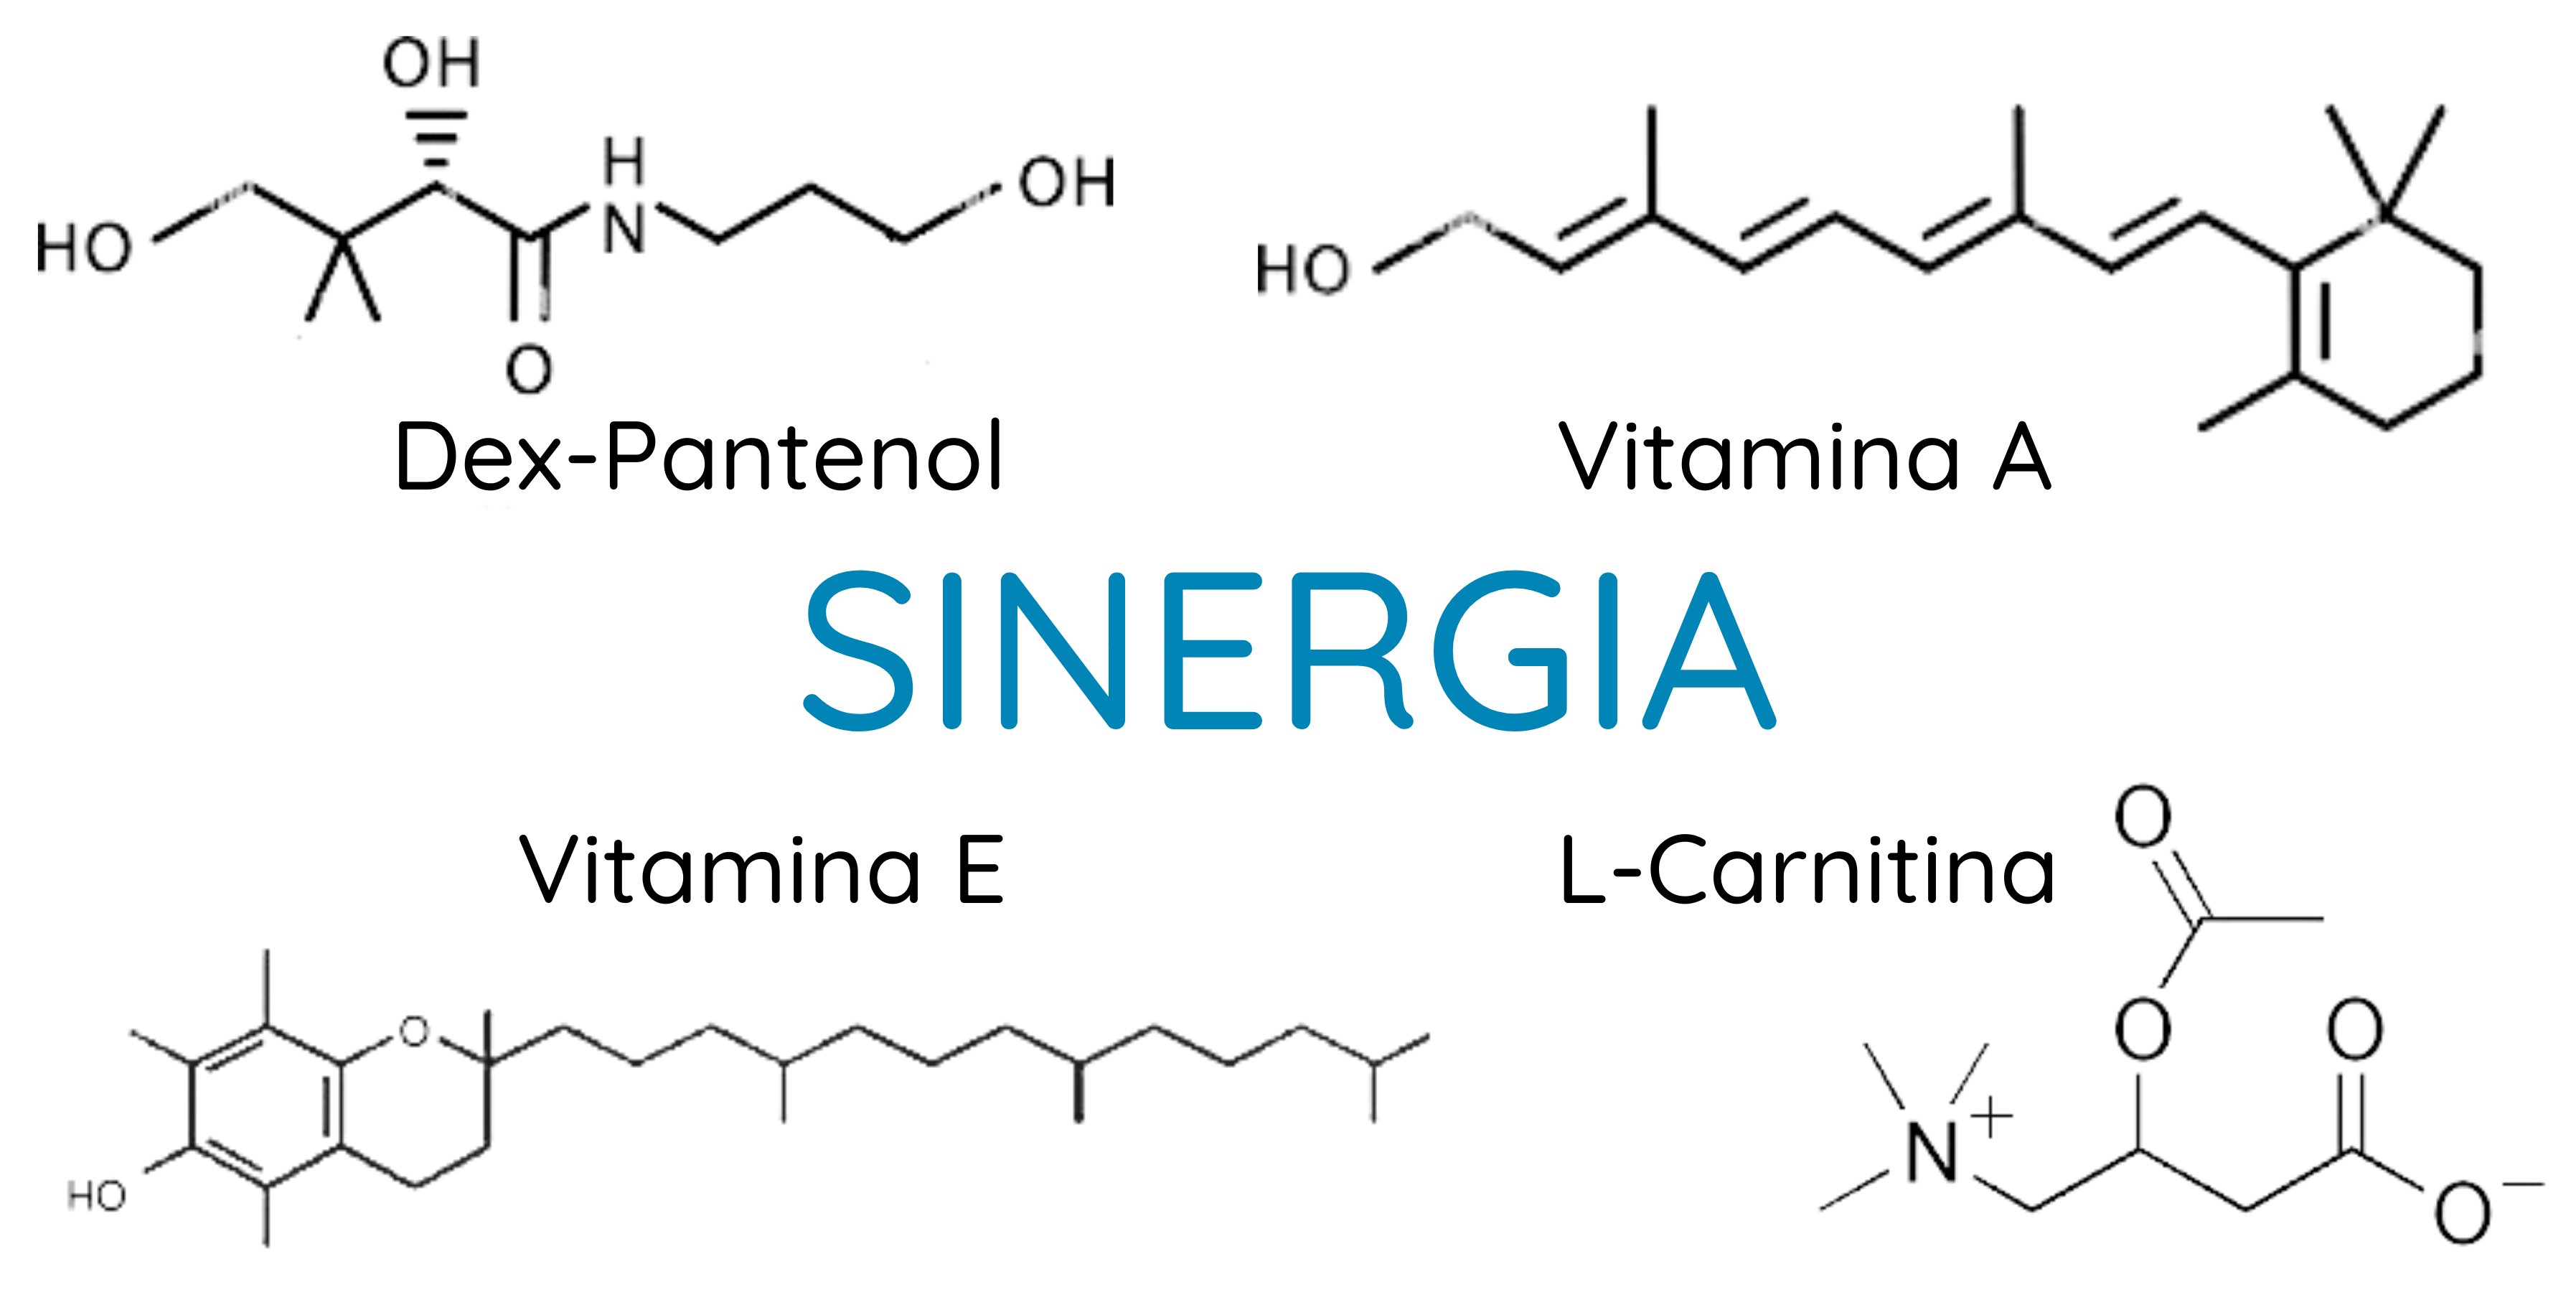 imagen de las moléculas: dex-pantenol, retinol, tocoferol y L-carnitina, 4 moléculas que actuan sinergicamente para regenerar la piel